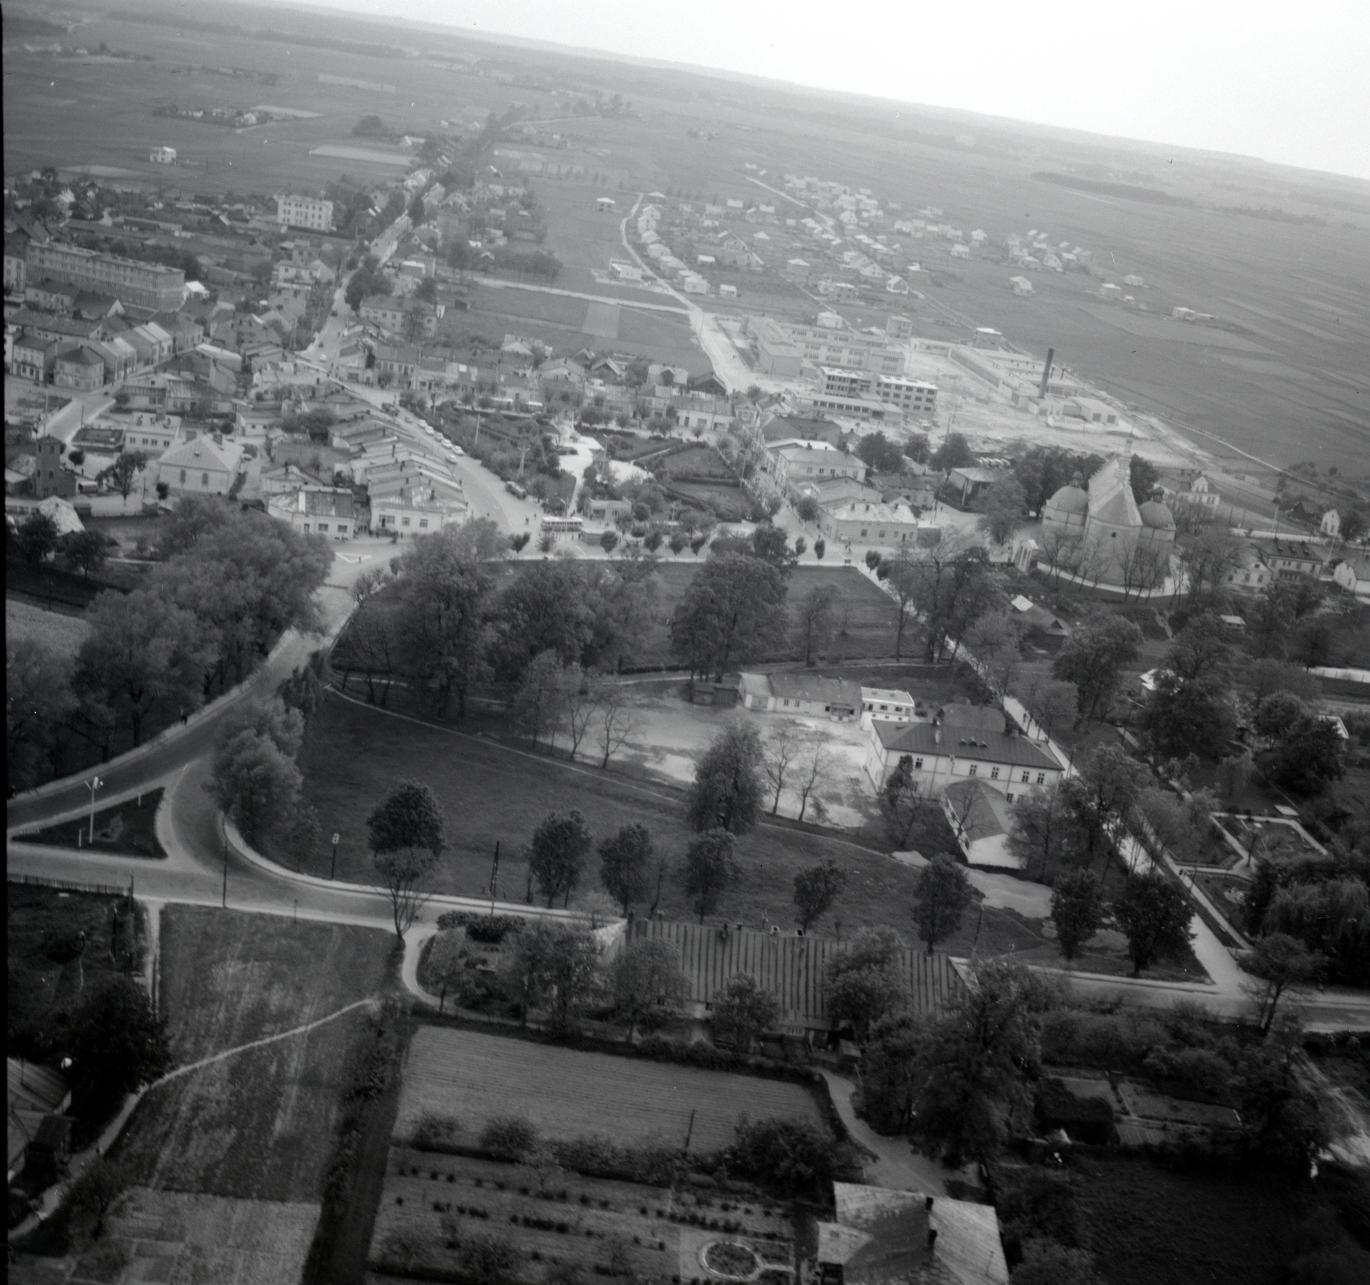 Kiedyś centrum Kolbuszowej było... skwerem. Zobacz zdjęcia lotnicze miasta z 1967 roku - zdjęcie nr 1. 